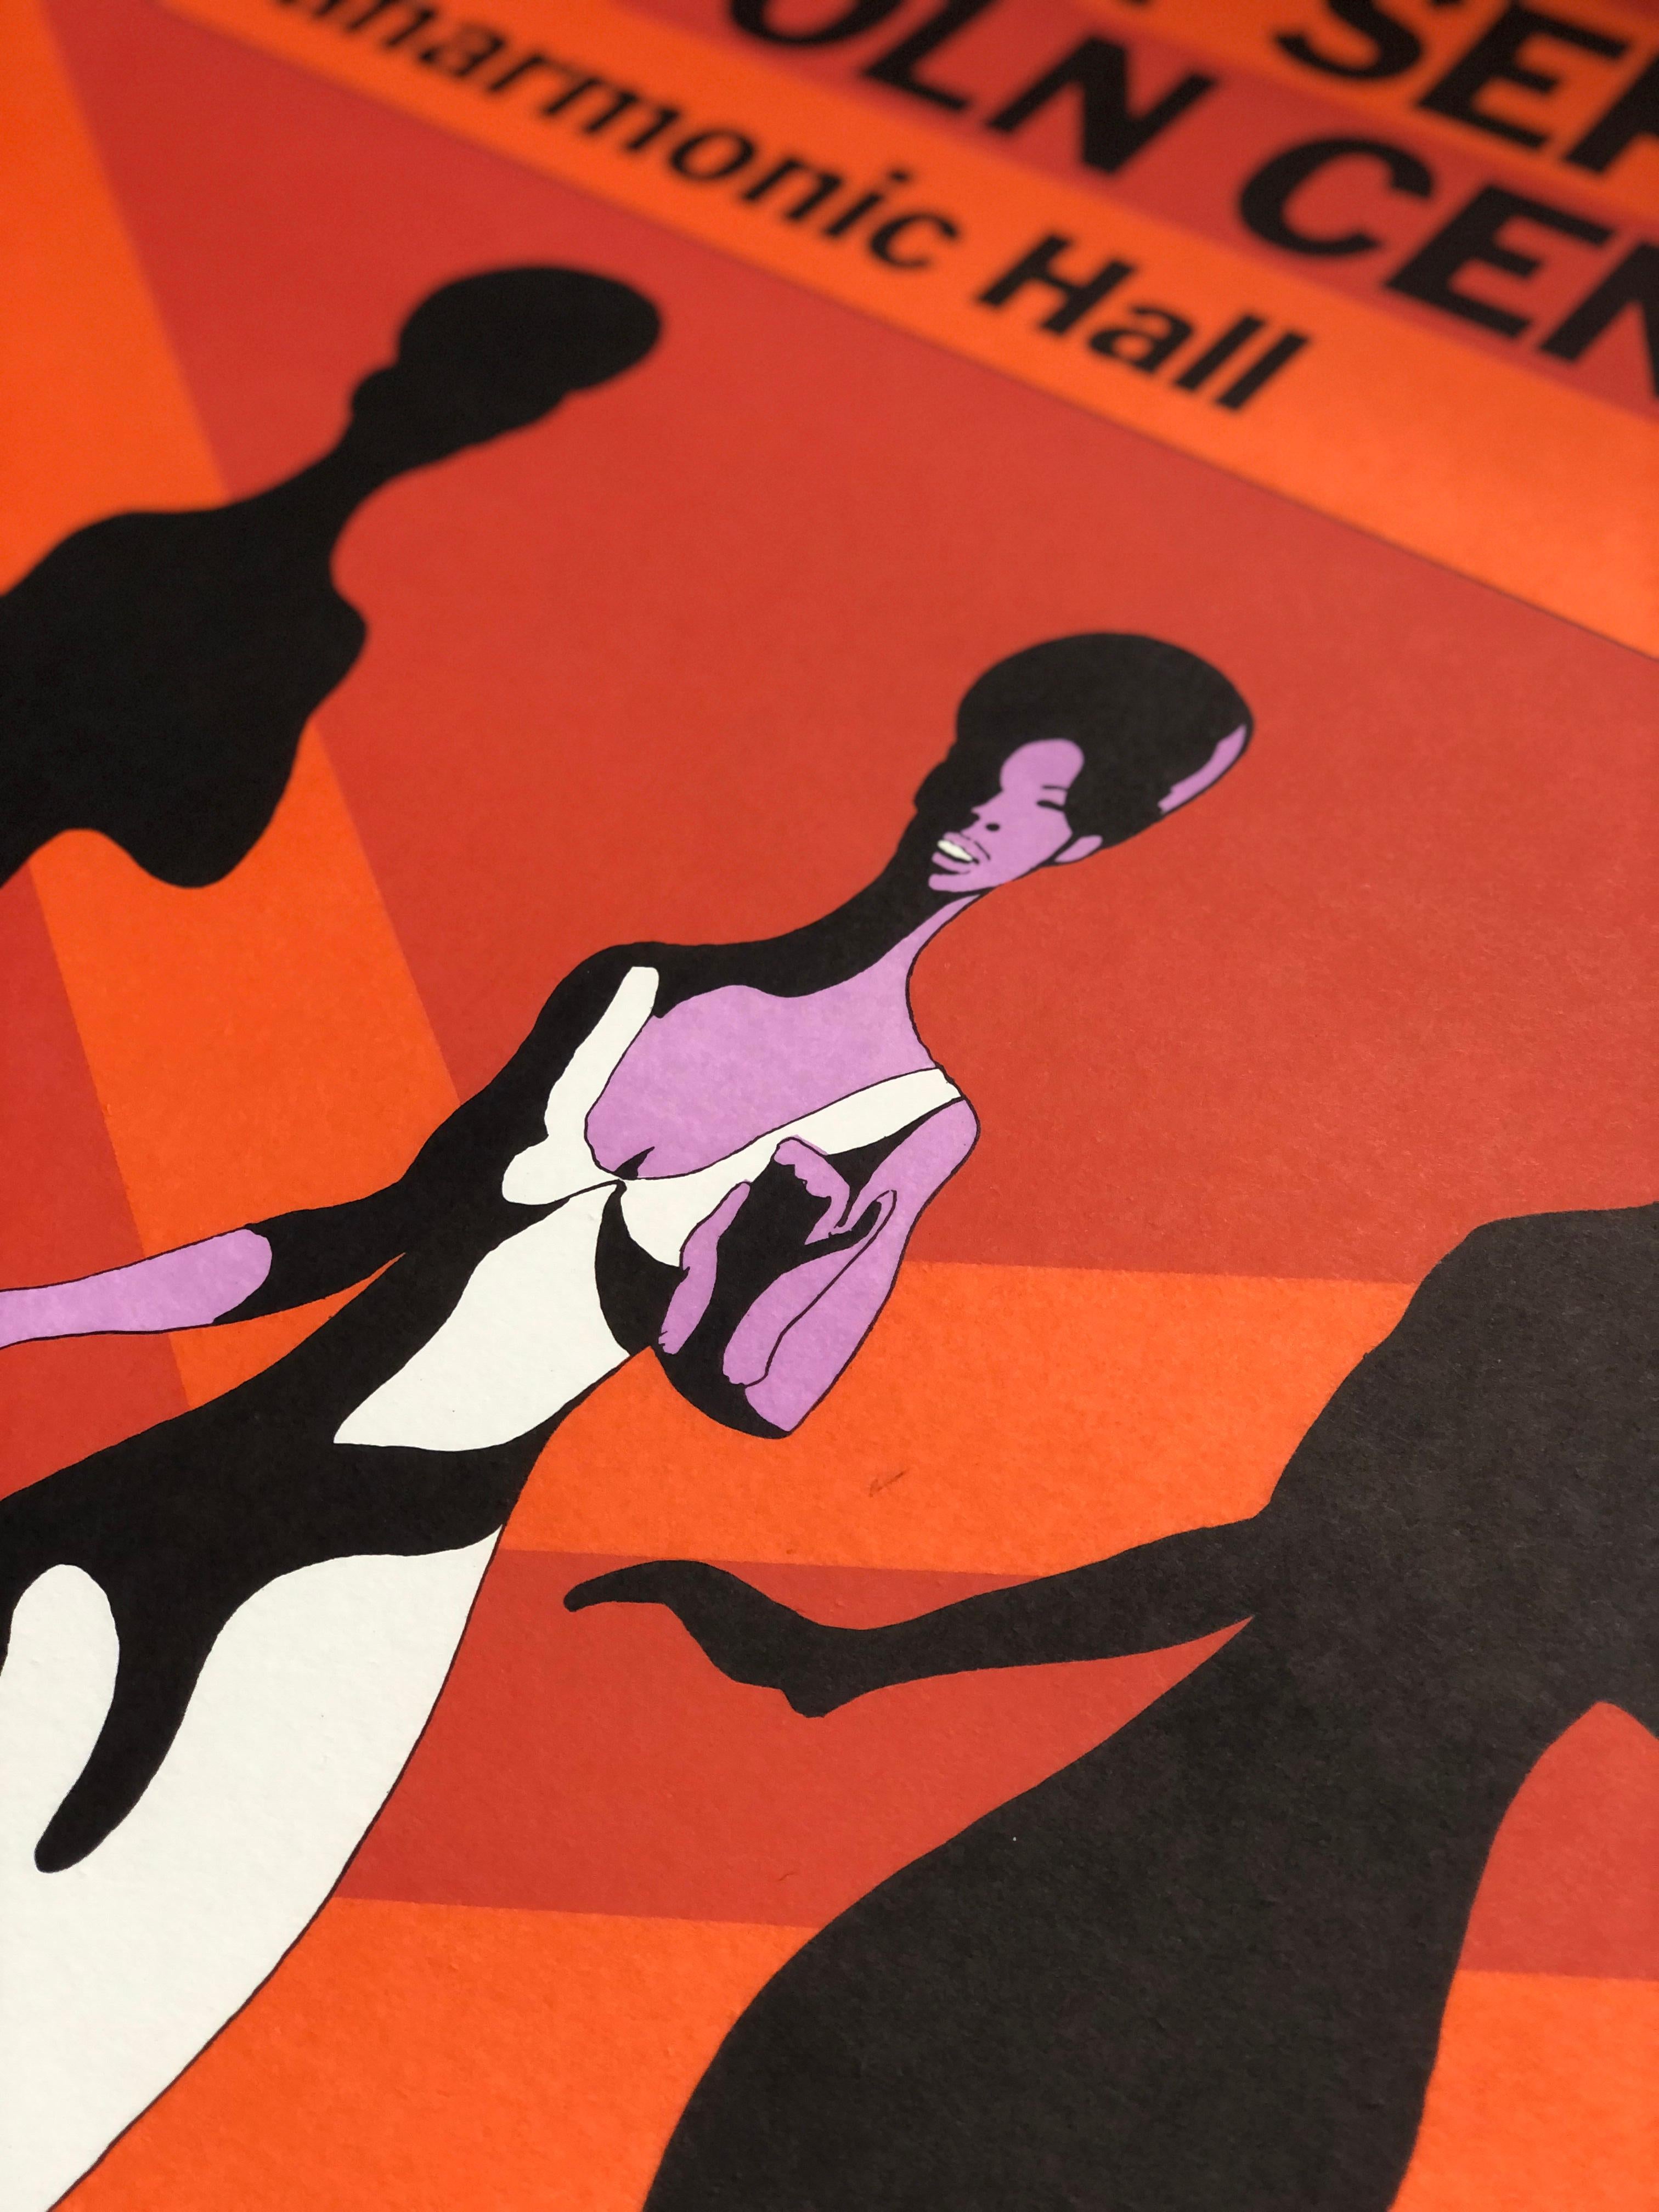 Paper Dionne Warwick Original Vintage Concert Poster by Milton Glaser, 1966